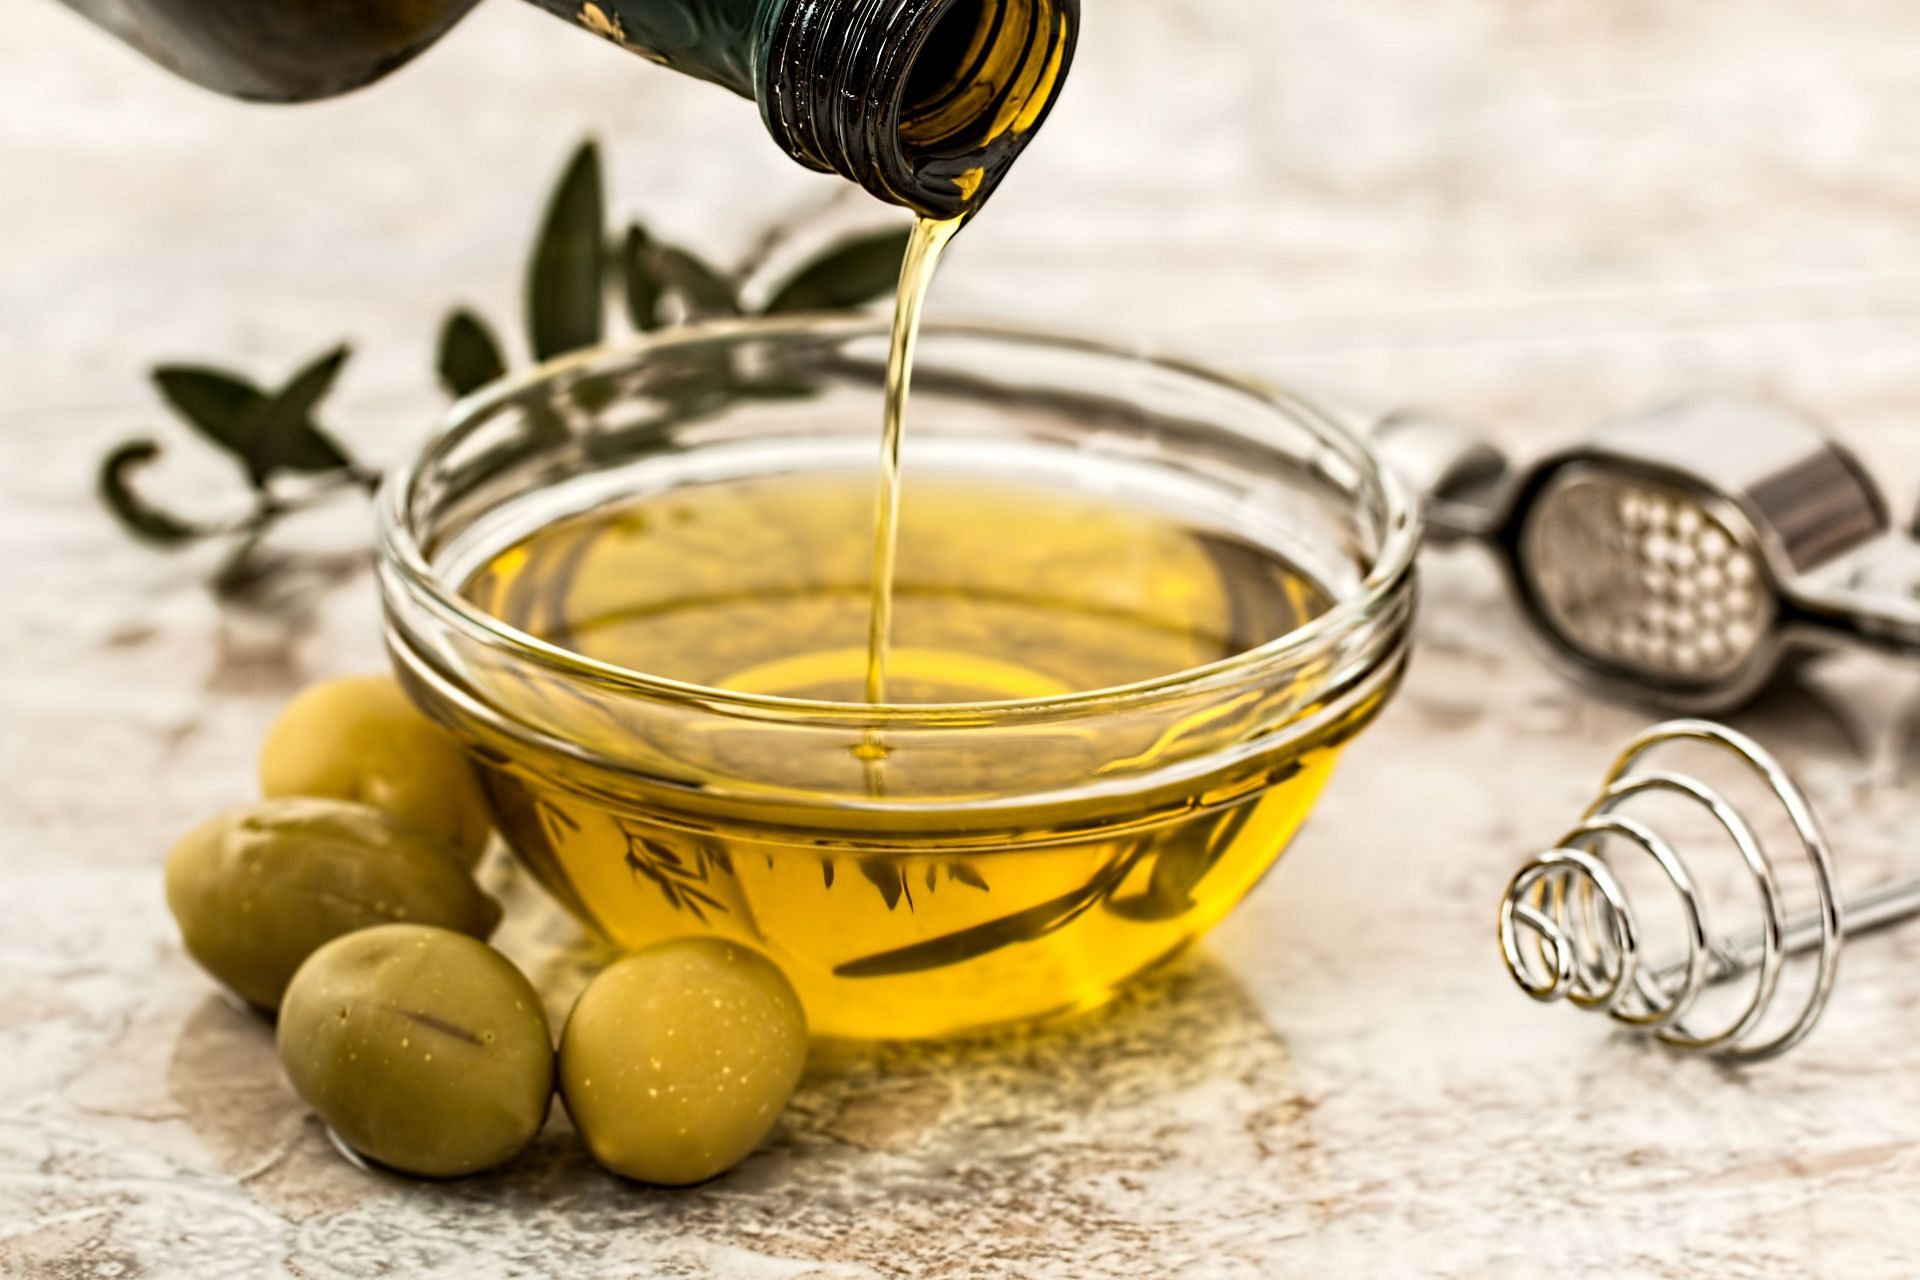 Olive oil for skin provides several benefits (Image via Pexels/Pixabay)